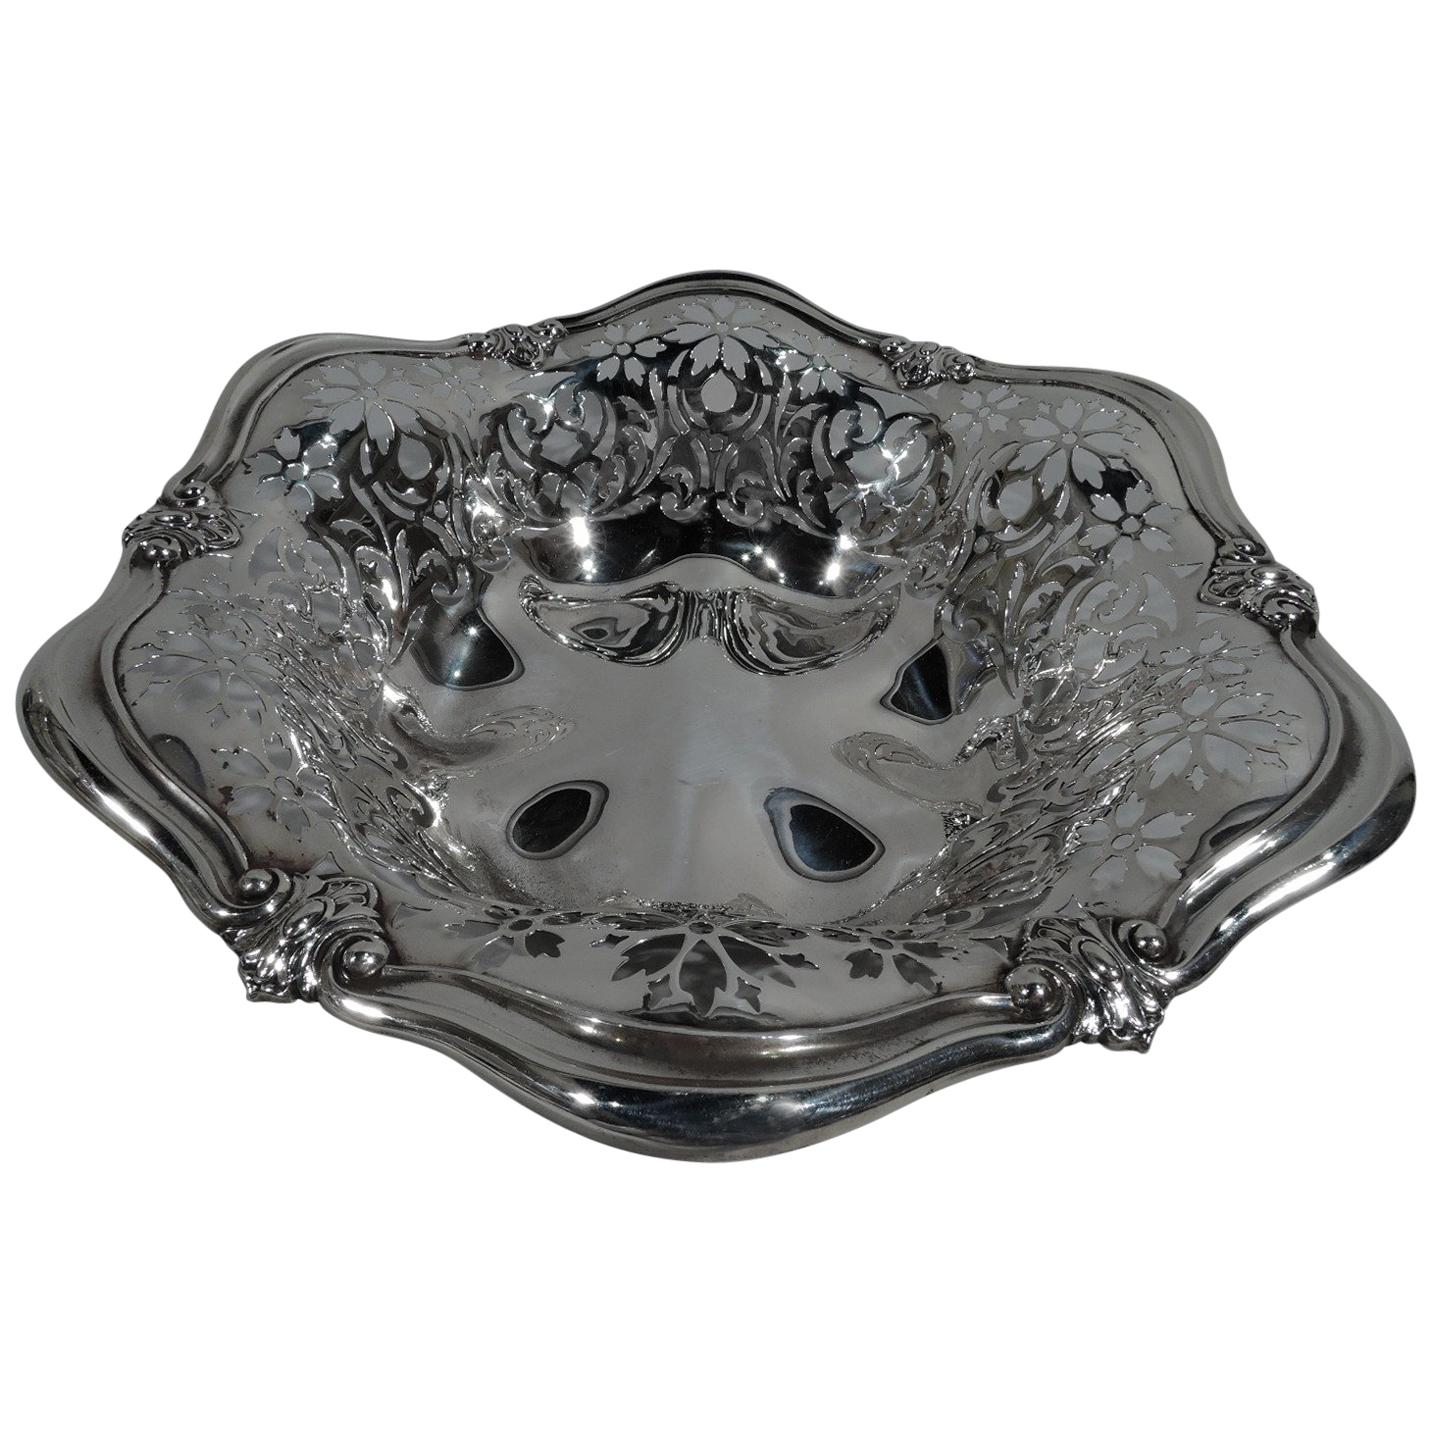 Antique Art Nouveau Pierced Sterling Silver Bowl by Gorham